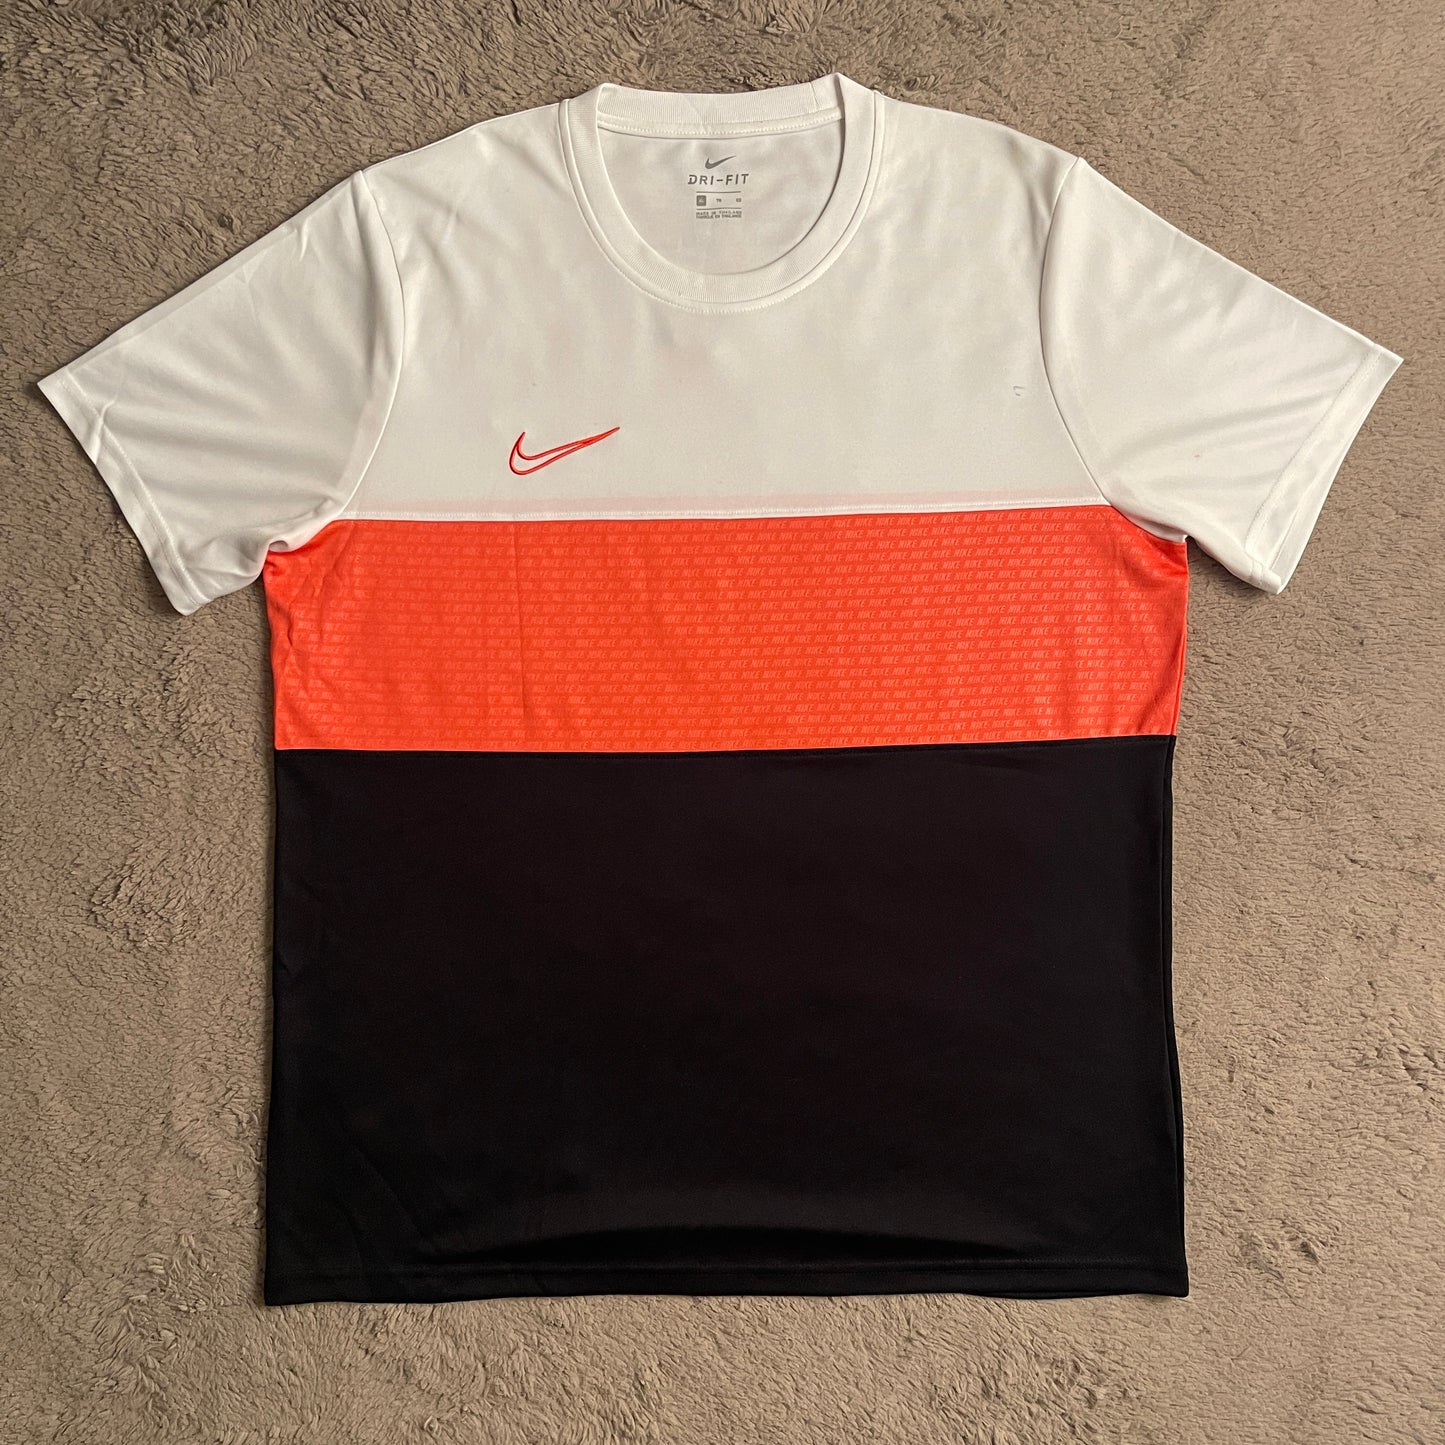 Nike Dri-FIT Tricolor (White/Pink/Black) Shirt (XL)